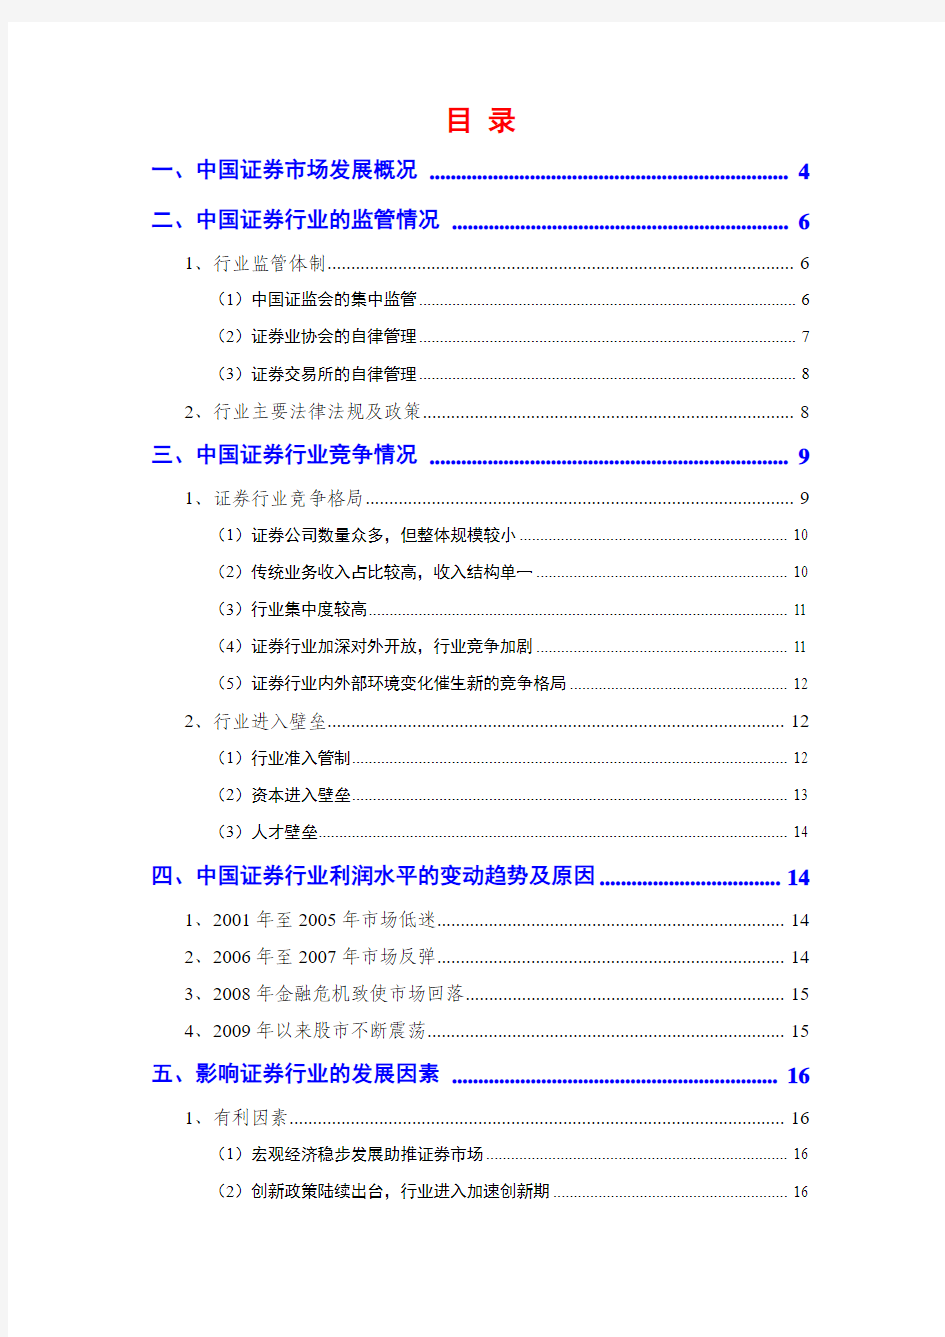 2014年中国证券行业分析报告